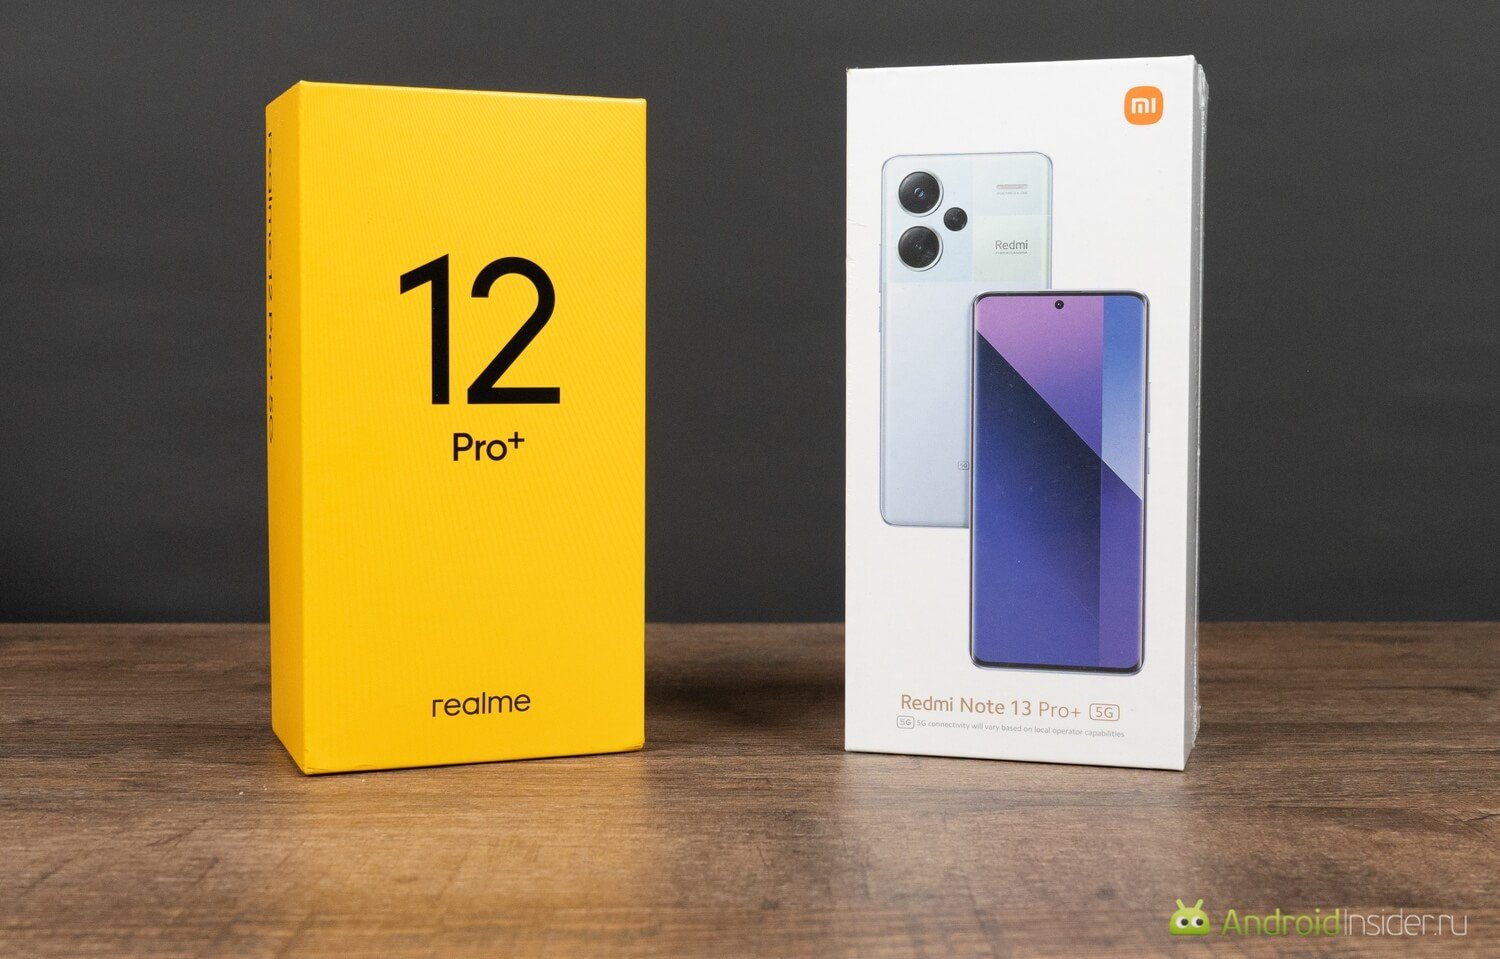 Сравнение realme 12 Pro+ и Redmi Note 13 Pro Plus. Коробки выполнены в фирменной стилистике каждого бренда. Фото.